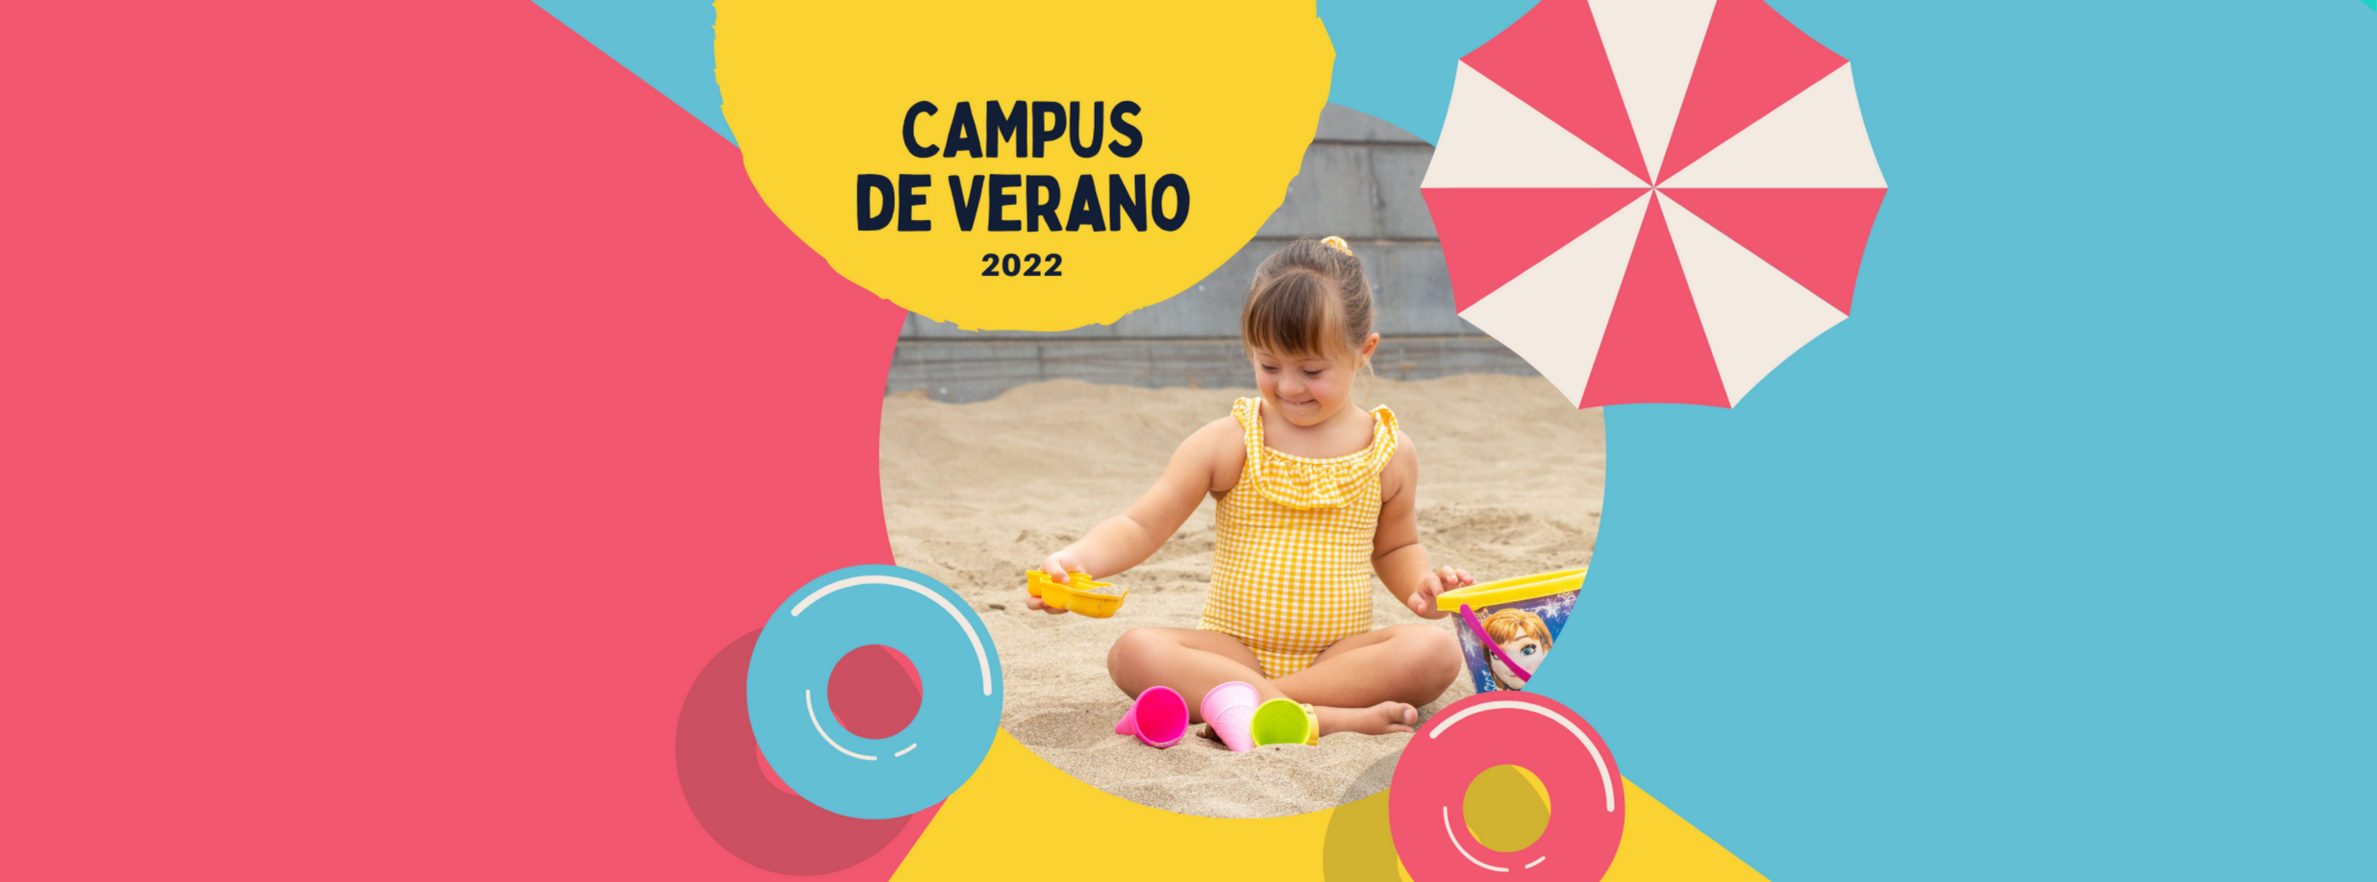 Campus de Verano 2022